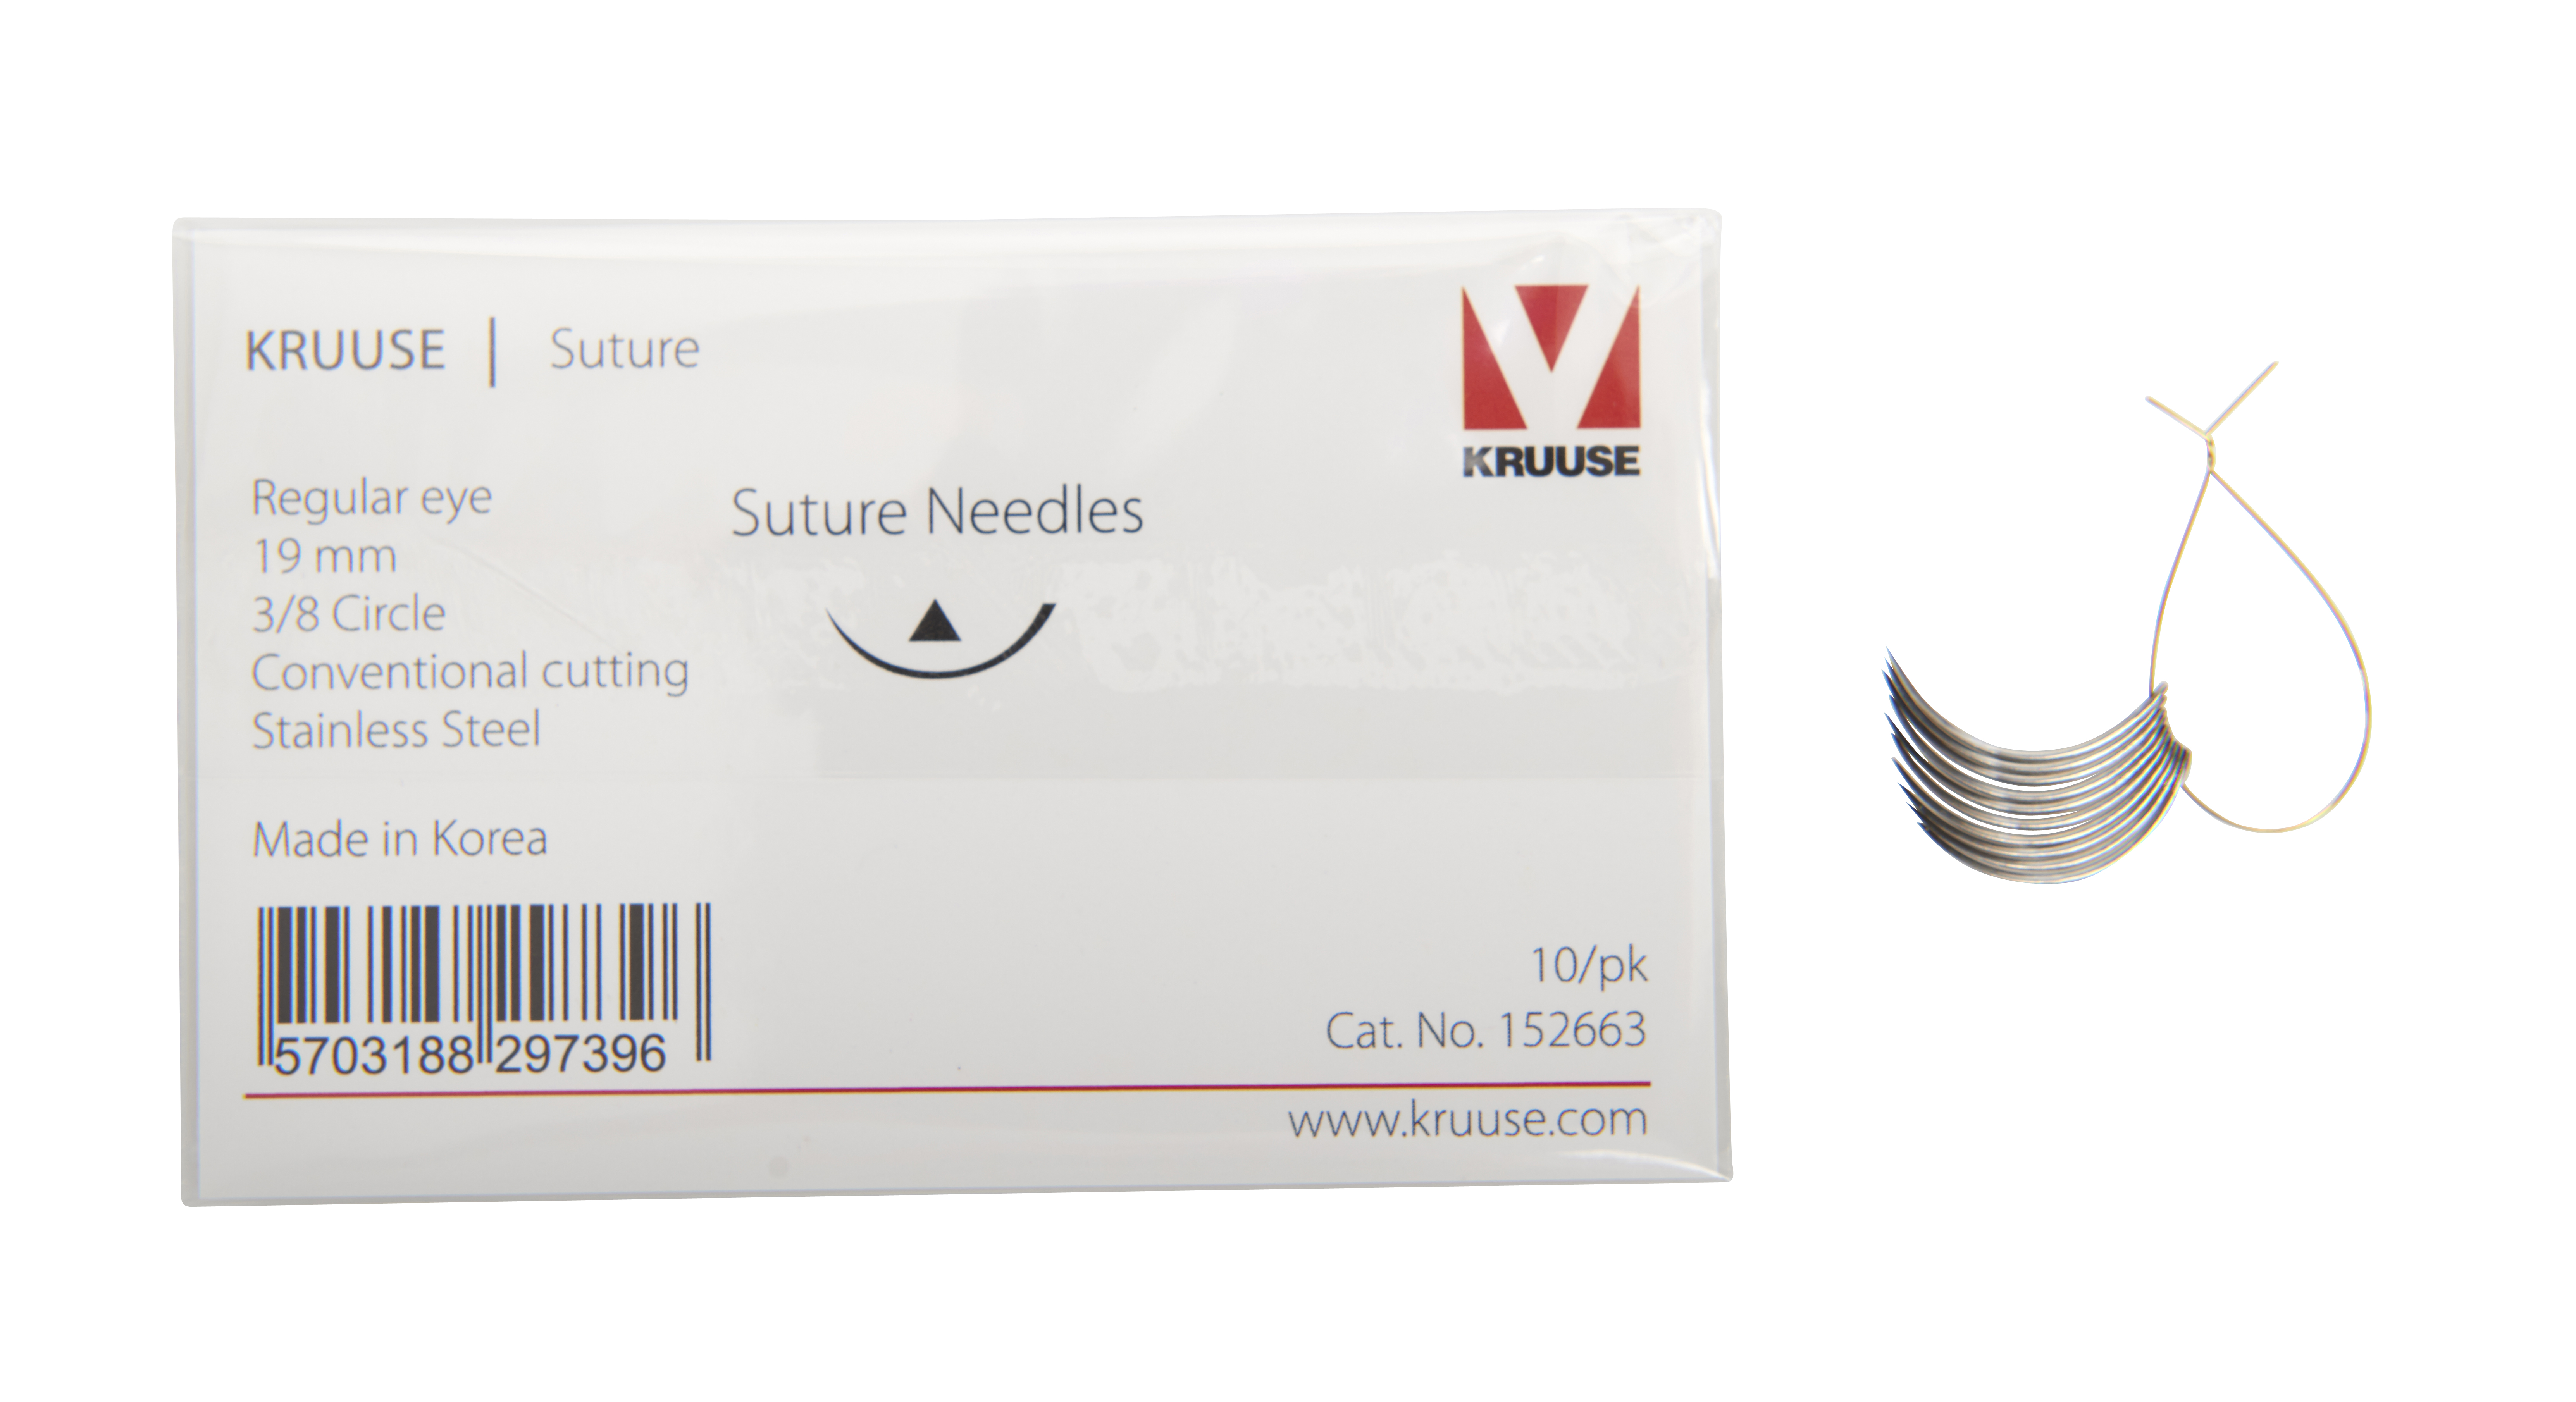 KRUUSE Suture Needle, regular eye, 3/8 circle, conventional cutting, 19 mm, 10/pk